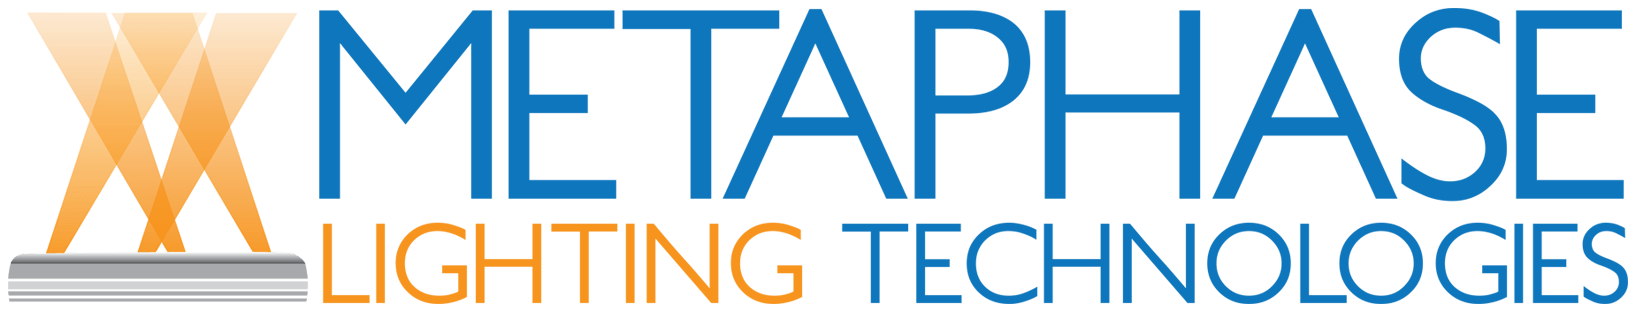 Metaphase Technologies logo